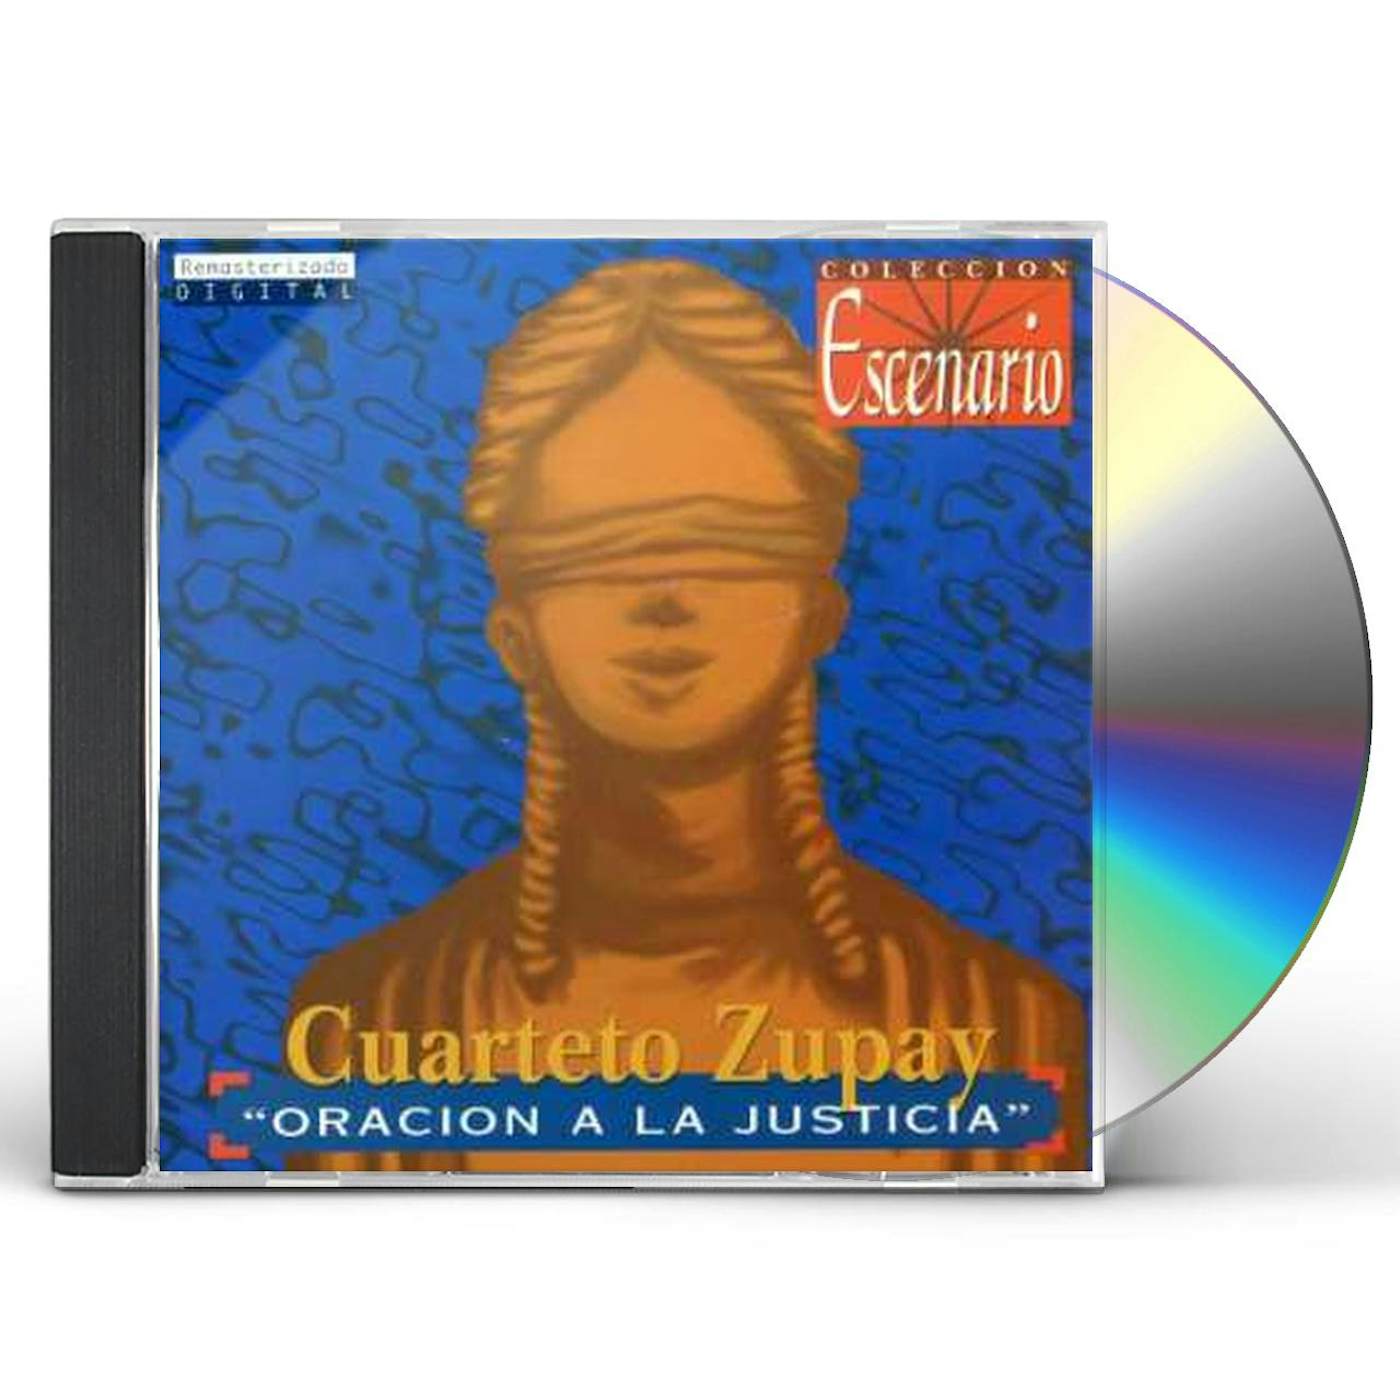 Cuarteto Zupay ORACION A LA JUSTICIA CD